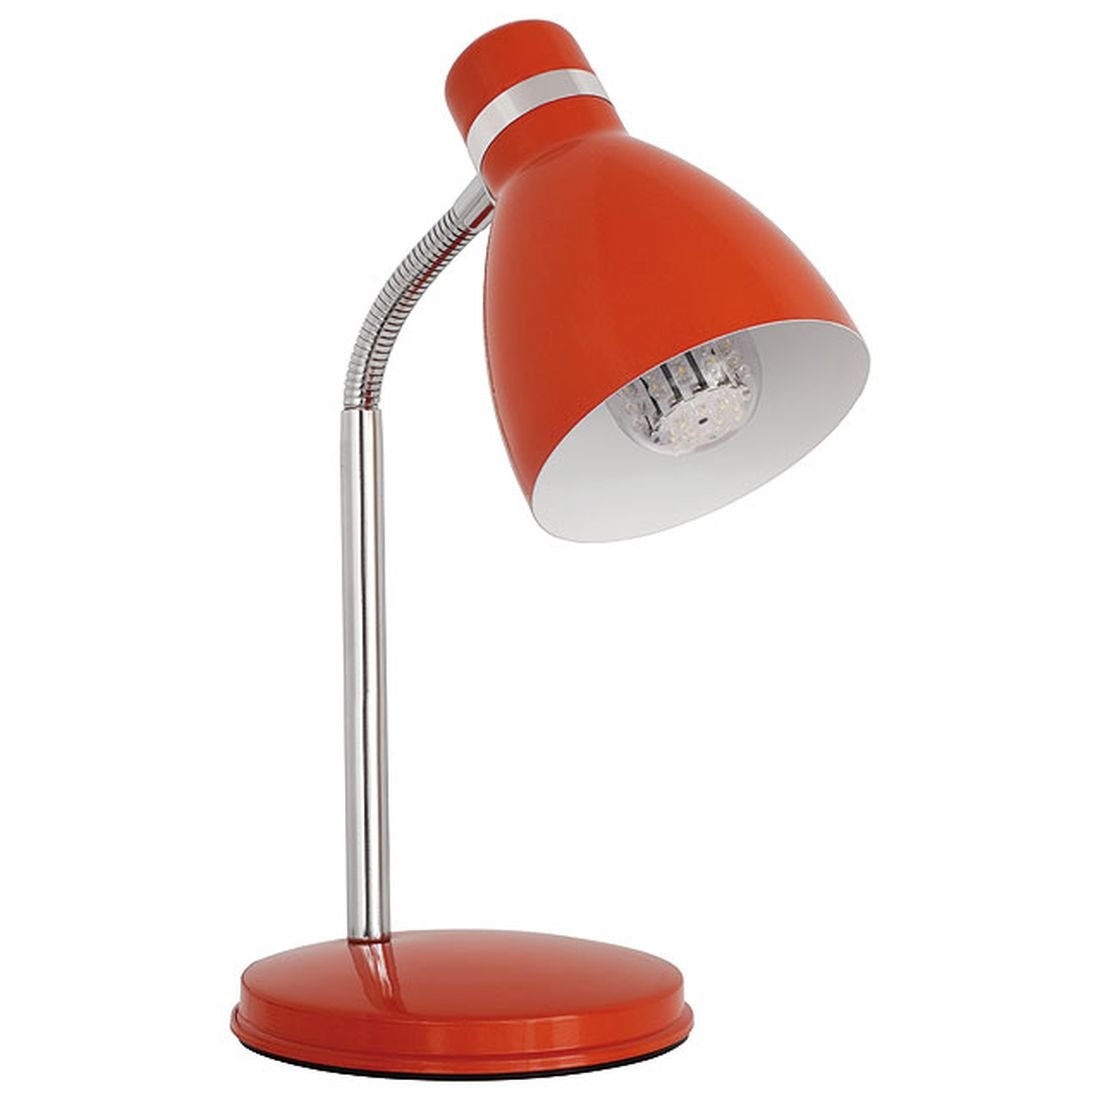 Kanlux Lampka biurkowa Zara HR-40-OR, pomarańczowa, 40 W